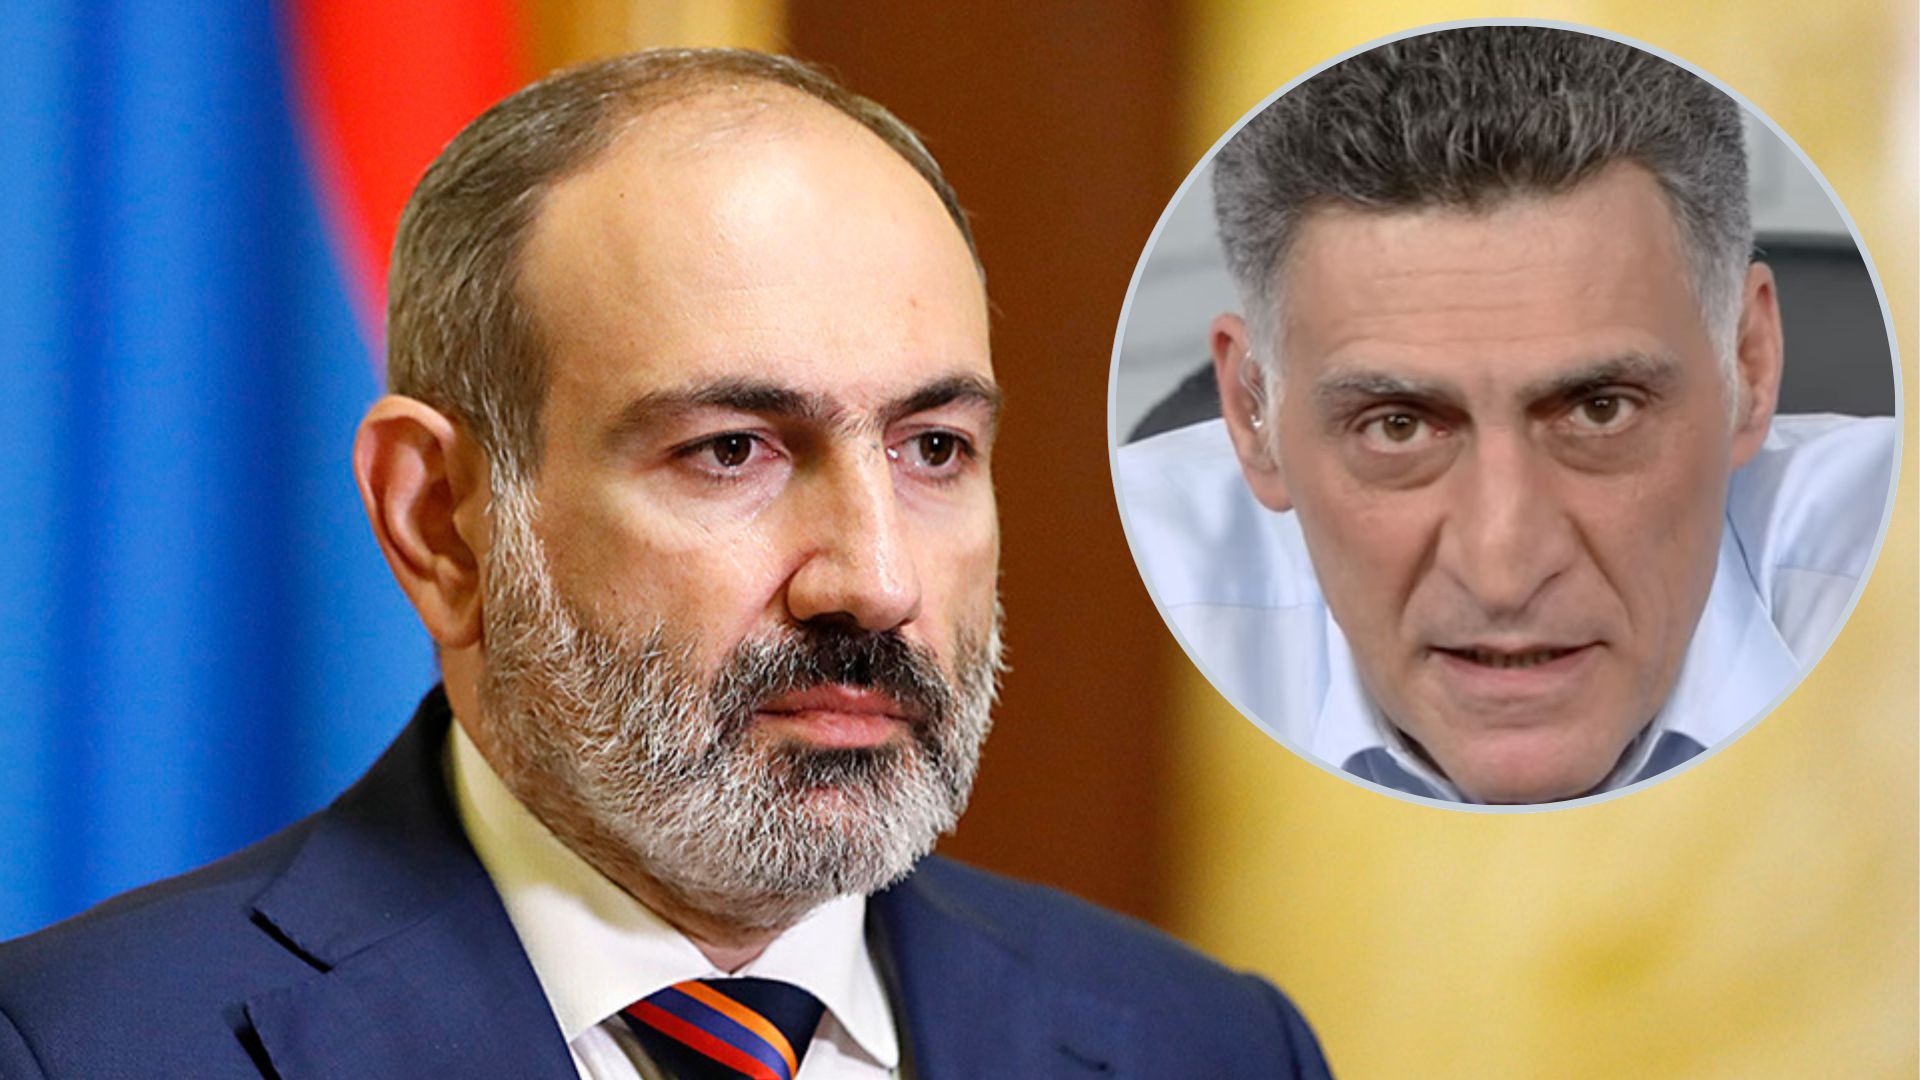 "Треба посадити в яму": російські пропагандисти відкрито клянуть прем'єр-міністра Вірменії